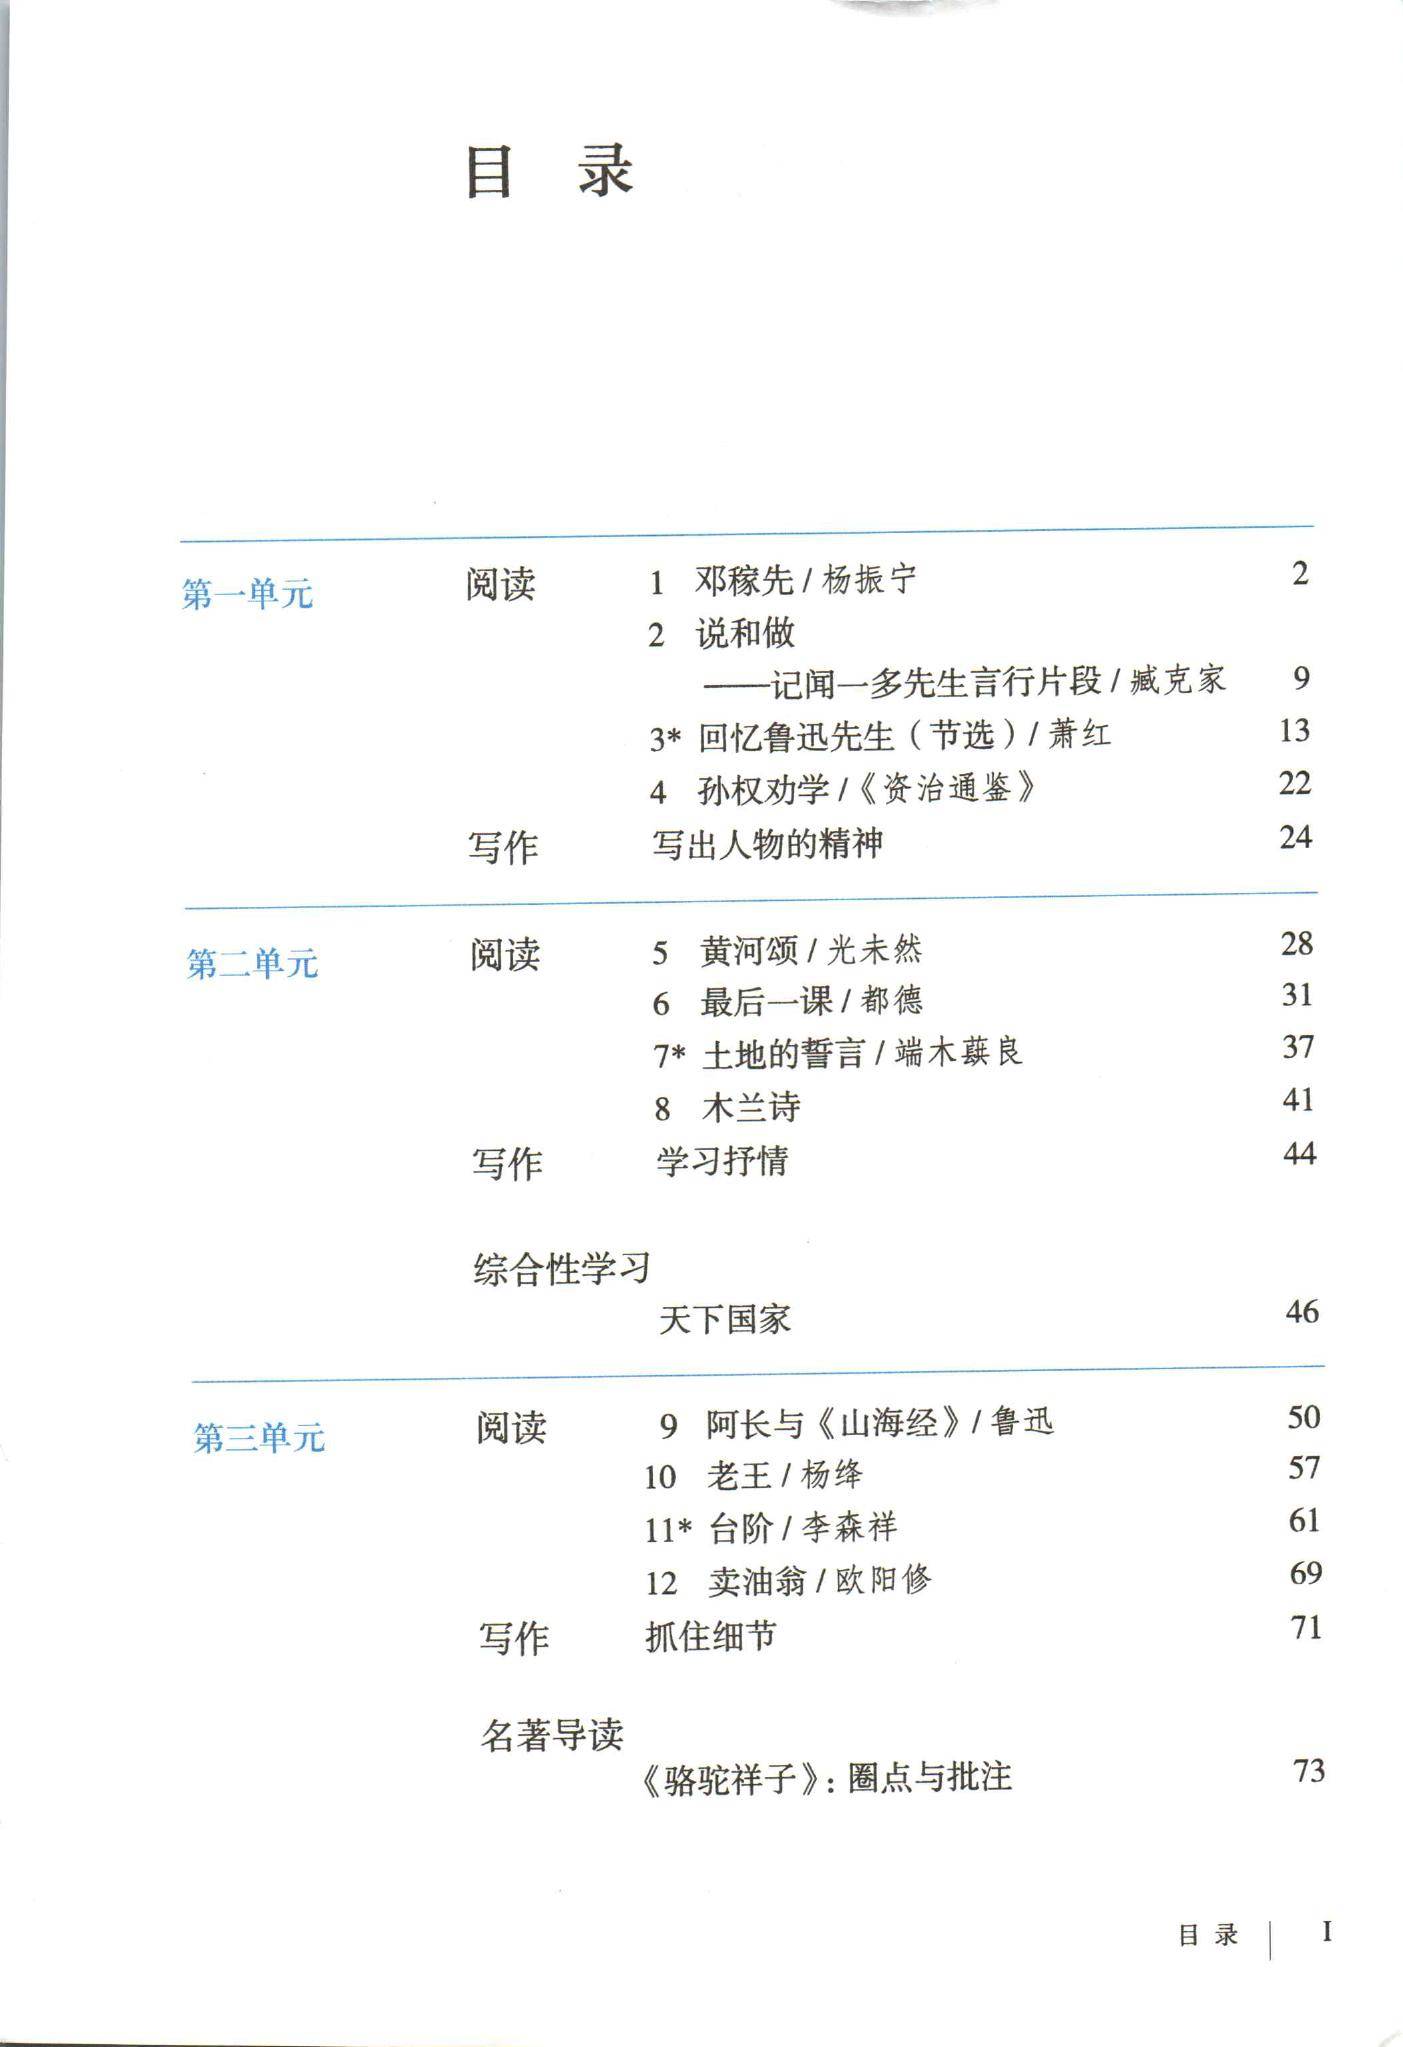 2021年初中语文七年级下册六三学制课本教材及相关资源介绍